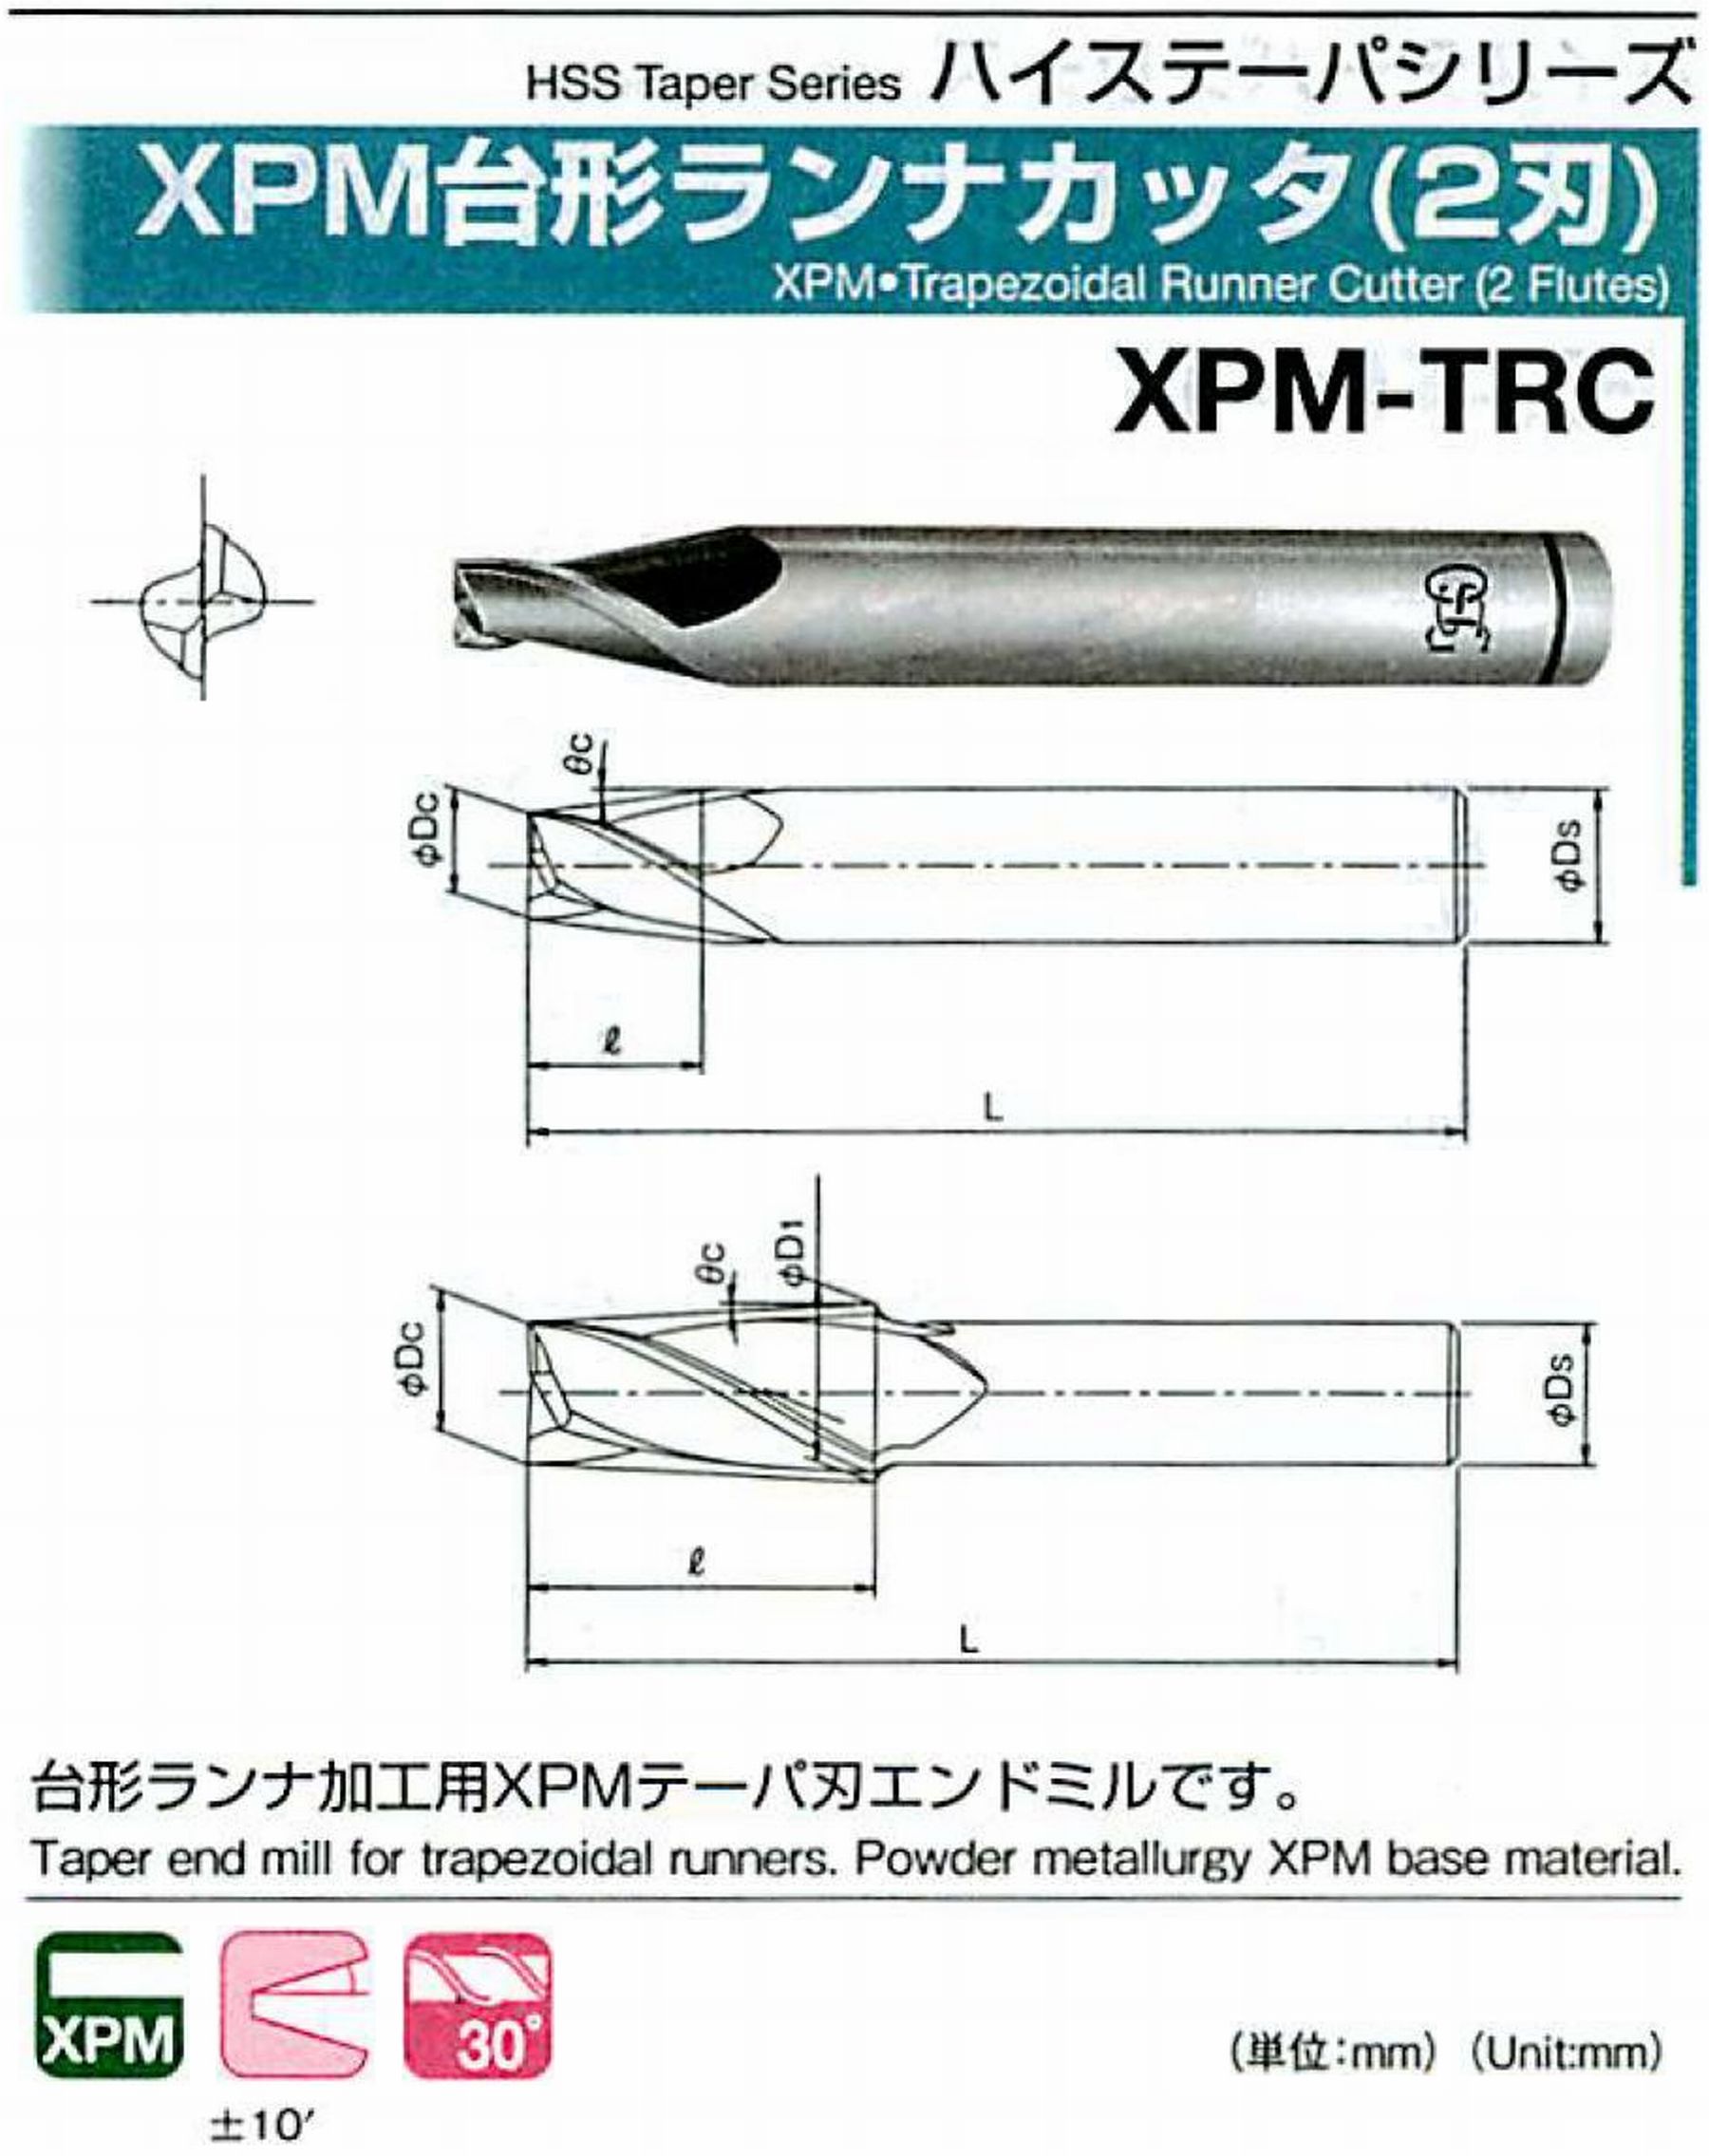 オーエスジー/OSG XPM台形ランナカッタ(2刃) XPM-TRC 外径×刃部テーパ半角6×7° 全長70 刃長12 シャンク径10mm